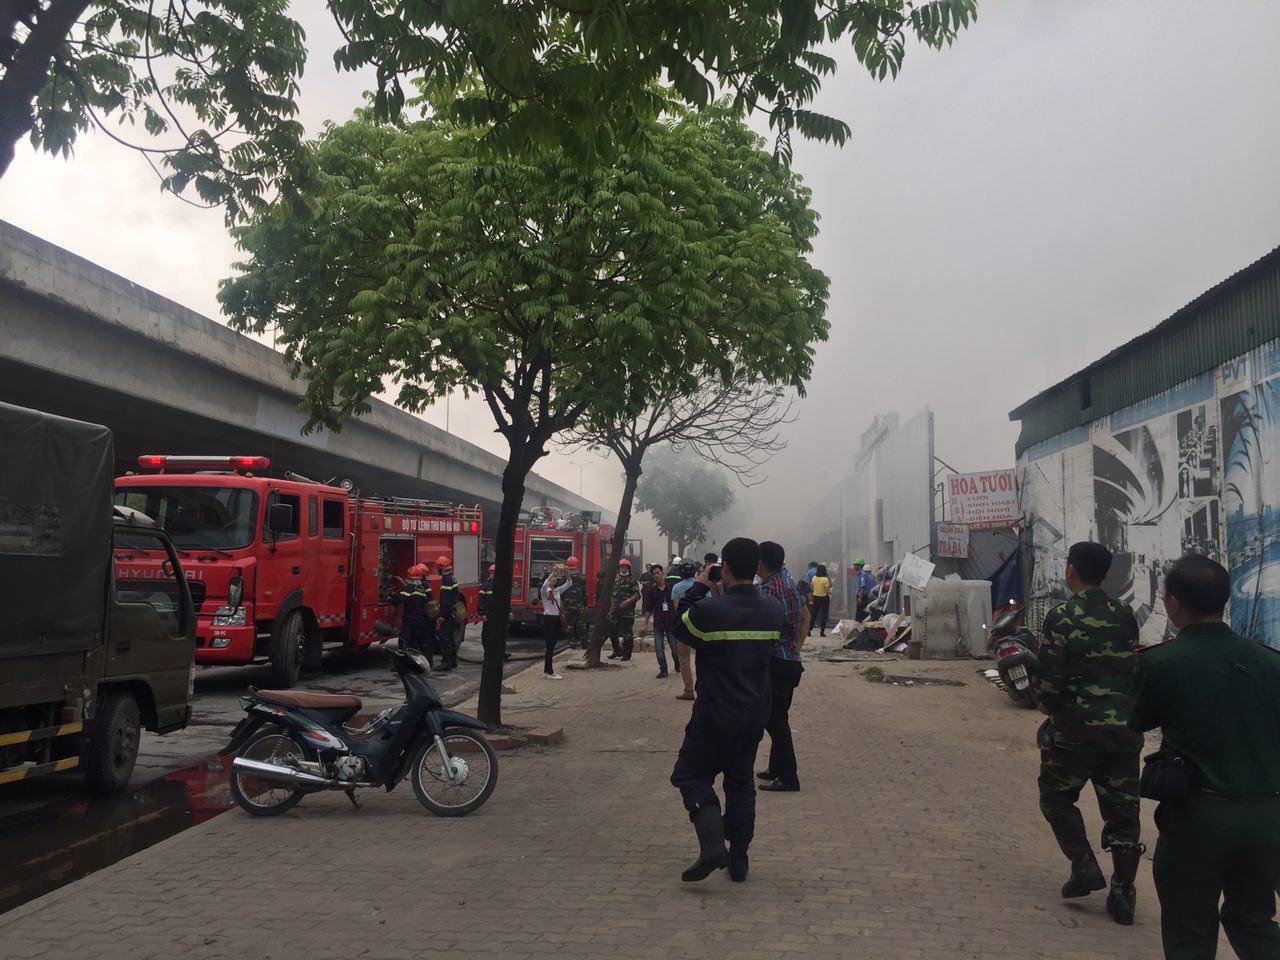 Hơn chục xe cứu hỏa có mặt tại hiện trường dập đám cháy. Ảnh: HT